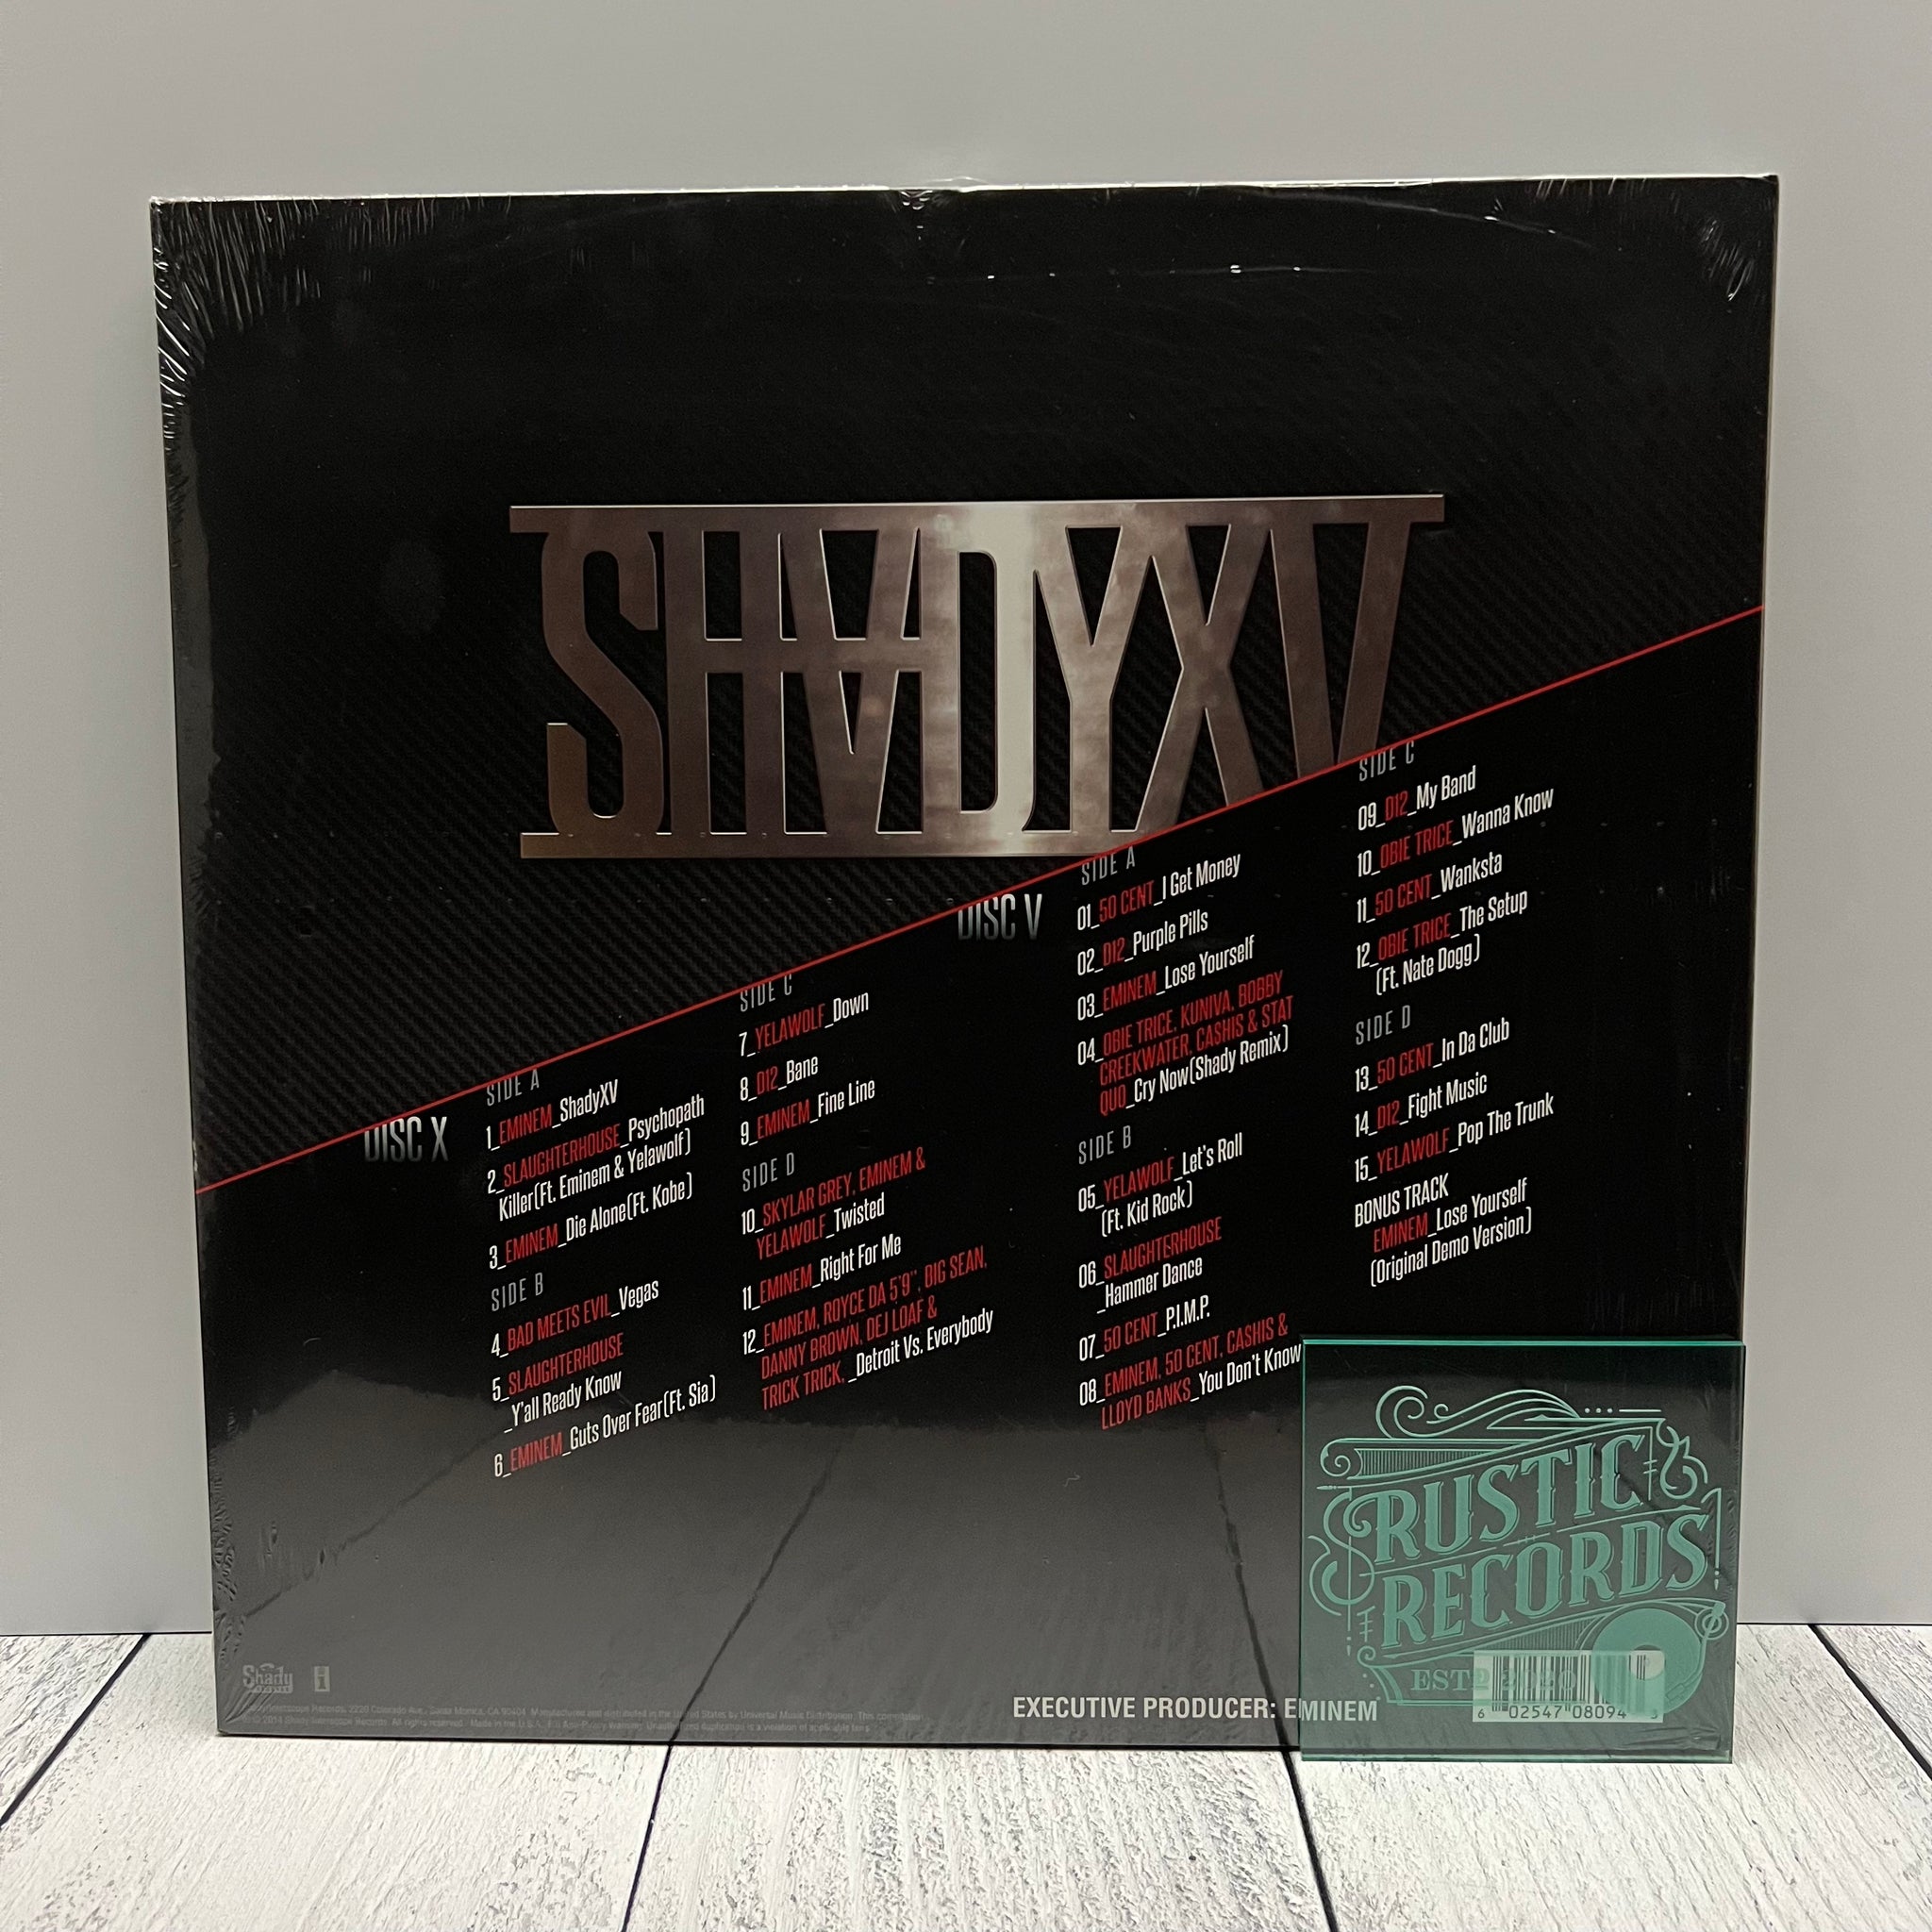 Eminem - Shady XV 4LP Box Set